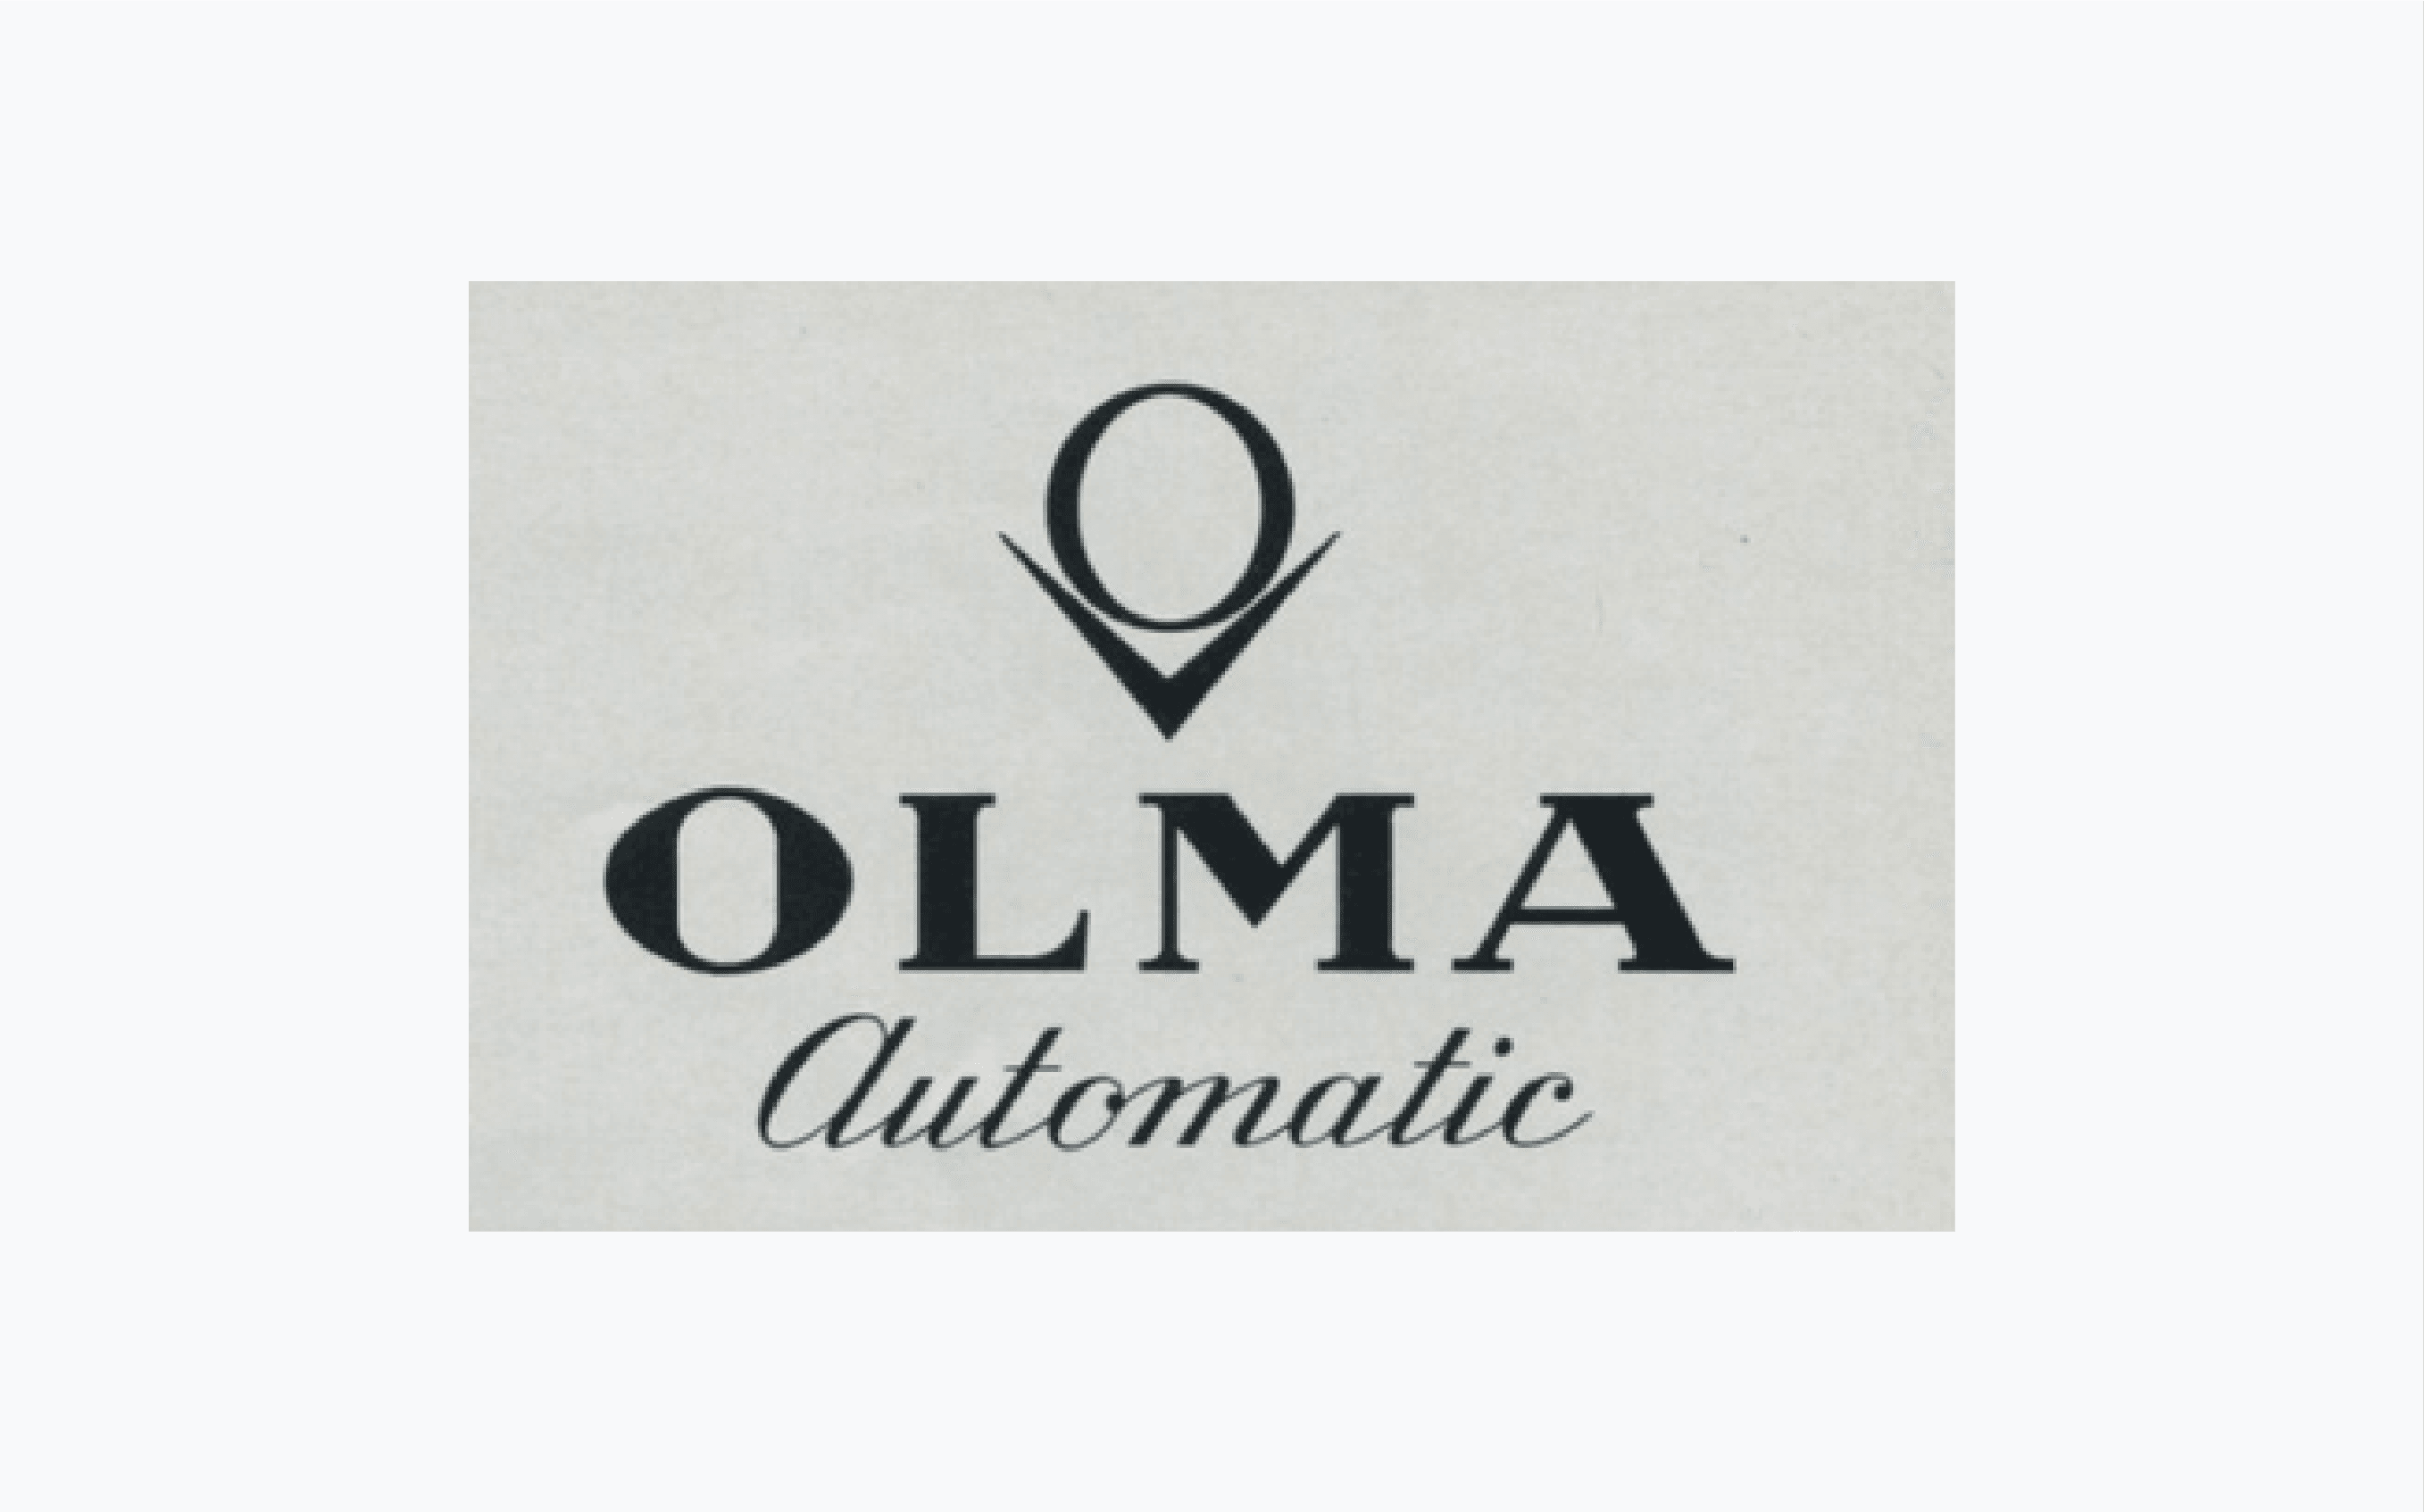 Olma category